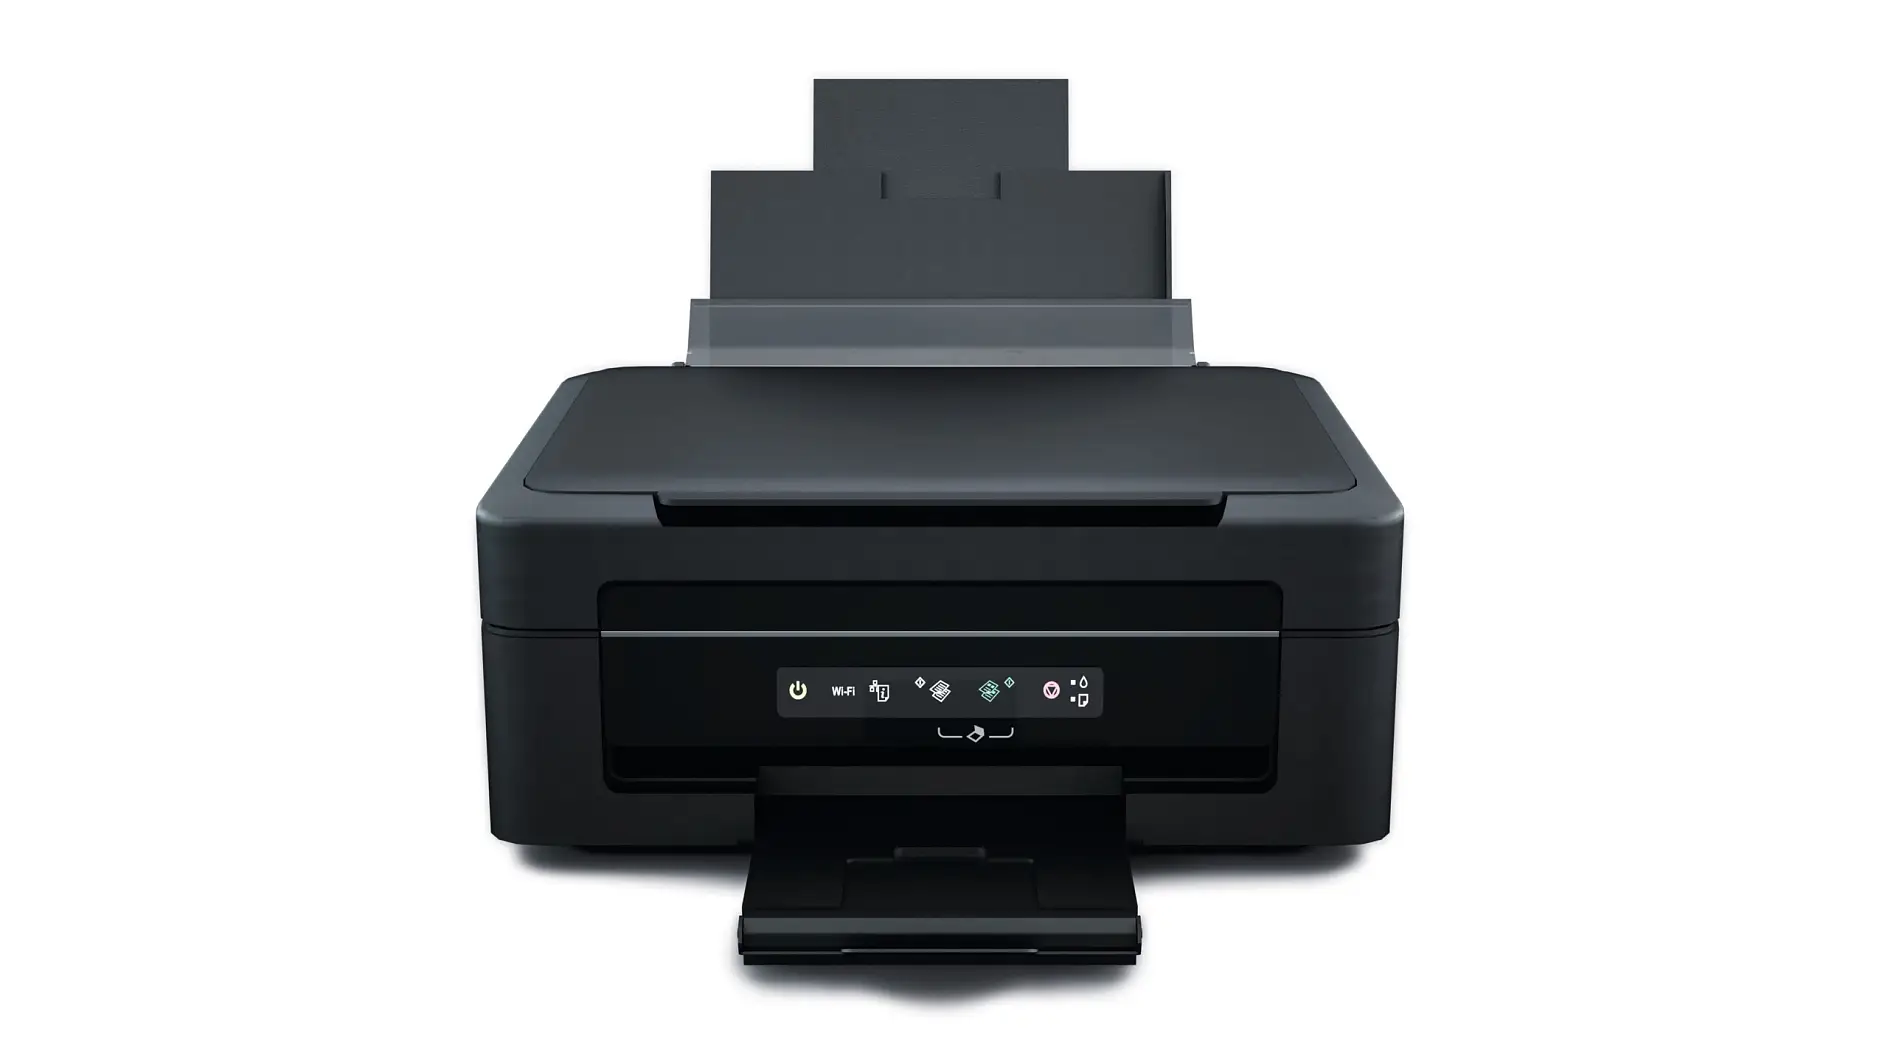 Un grand nombre de solutions adhésives peuvent être employées pour une large palette d’applications différentes sur les imprimantes multifonctions.